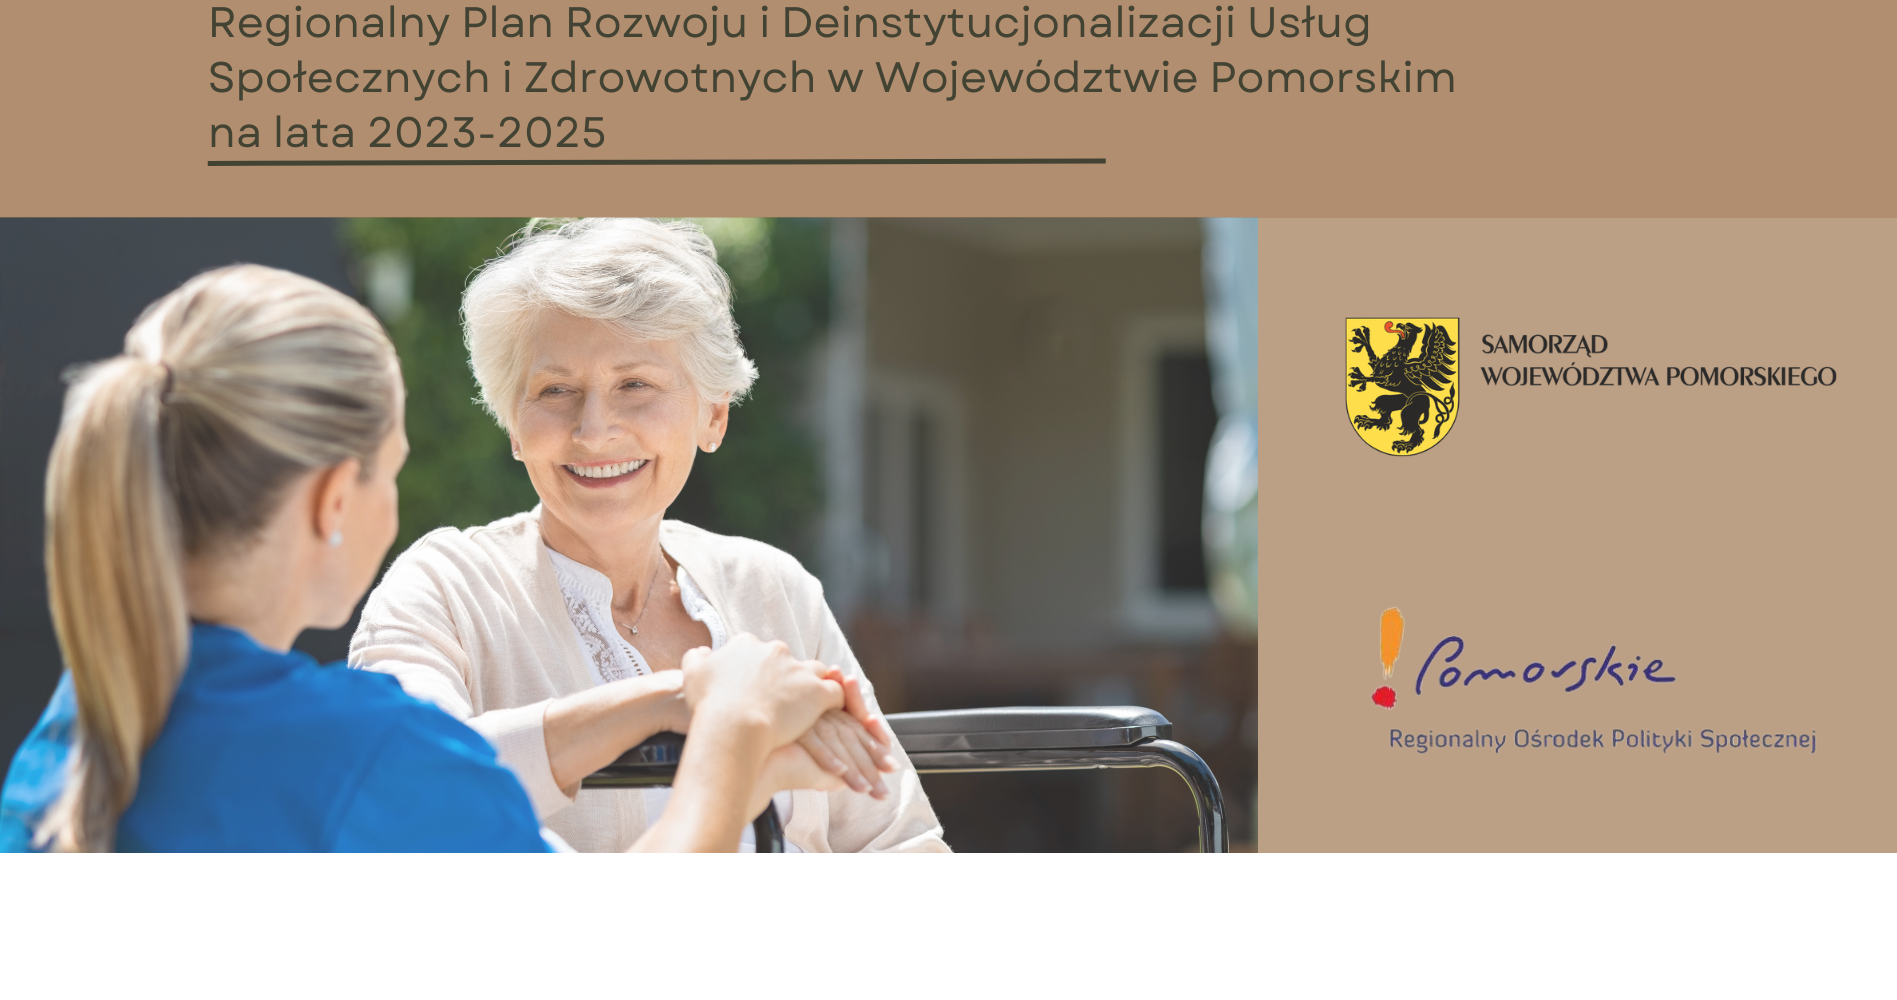 Regionalny Plan Rozwoju i Deinstytucjonalizacji Usług Społecznych i Zdrowotnych przyjęty!